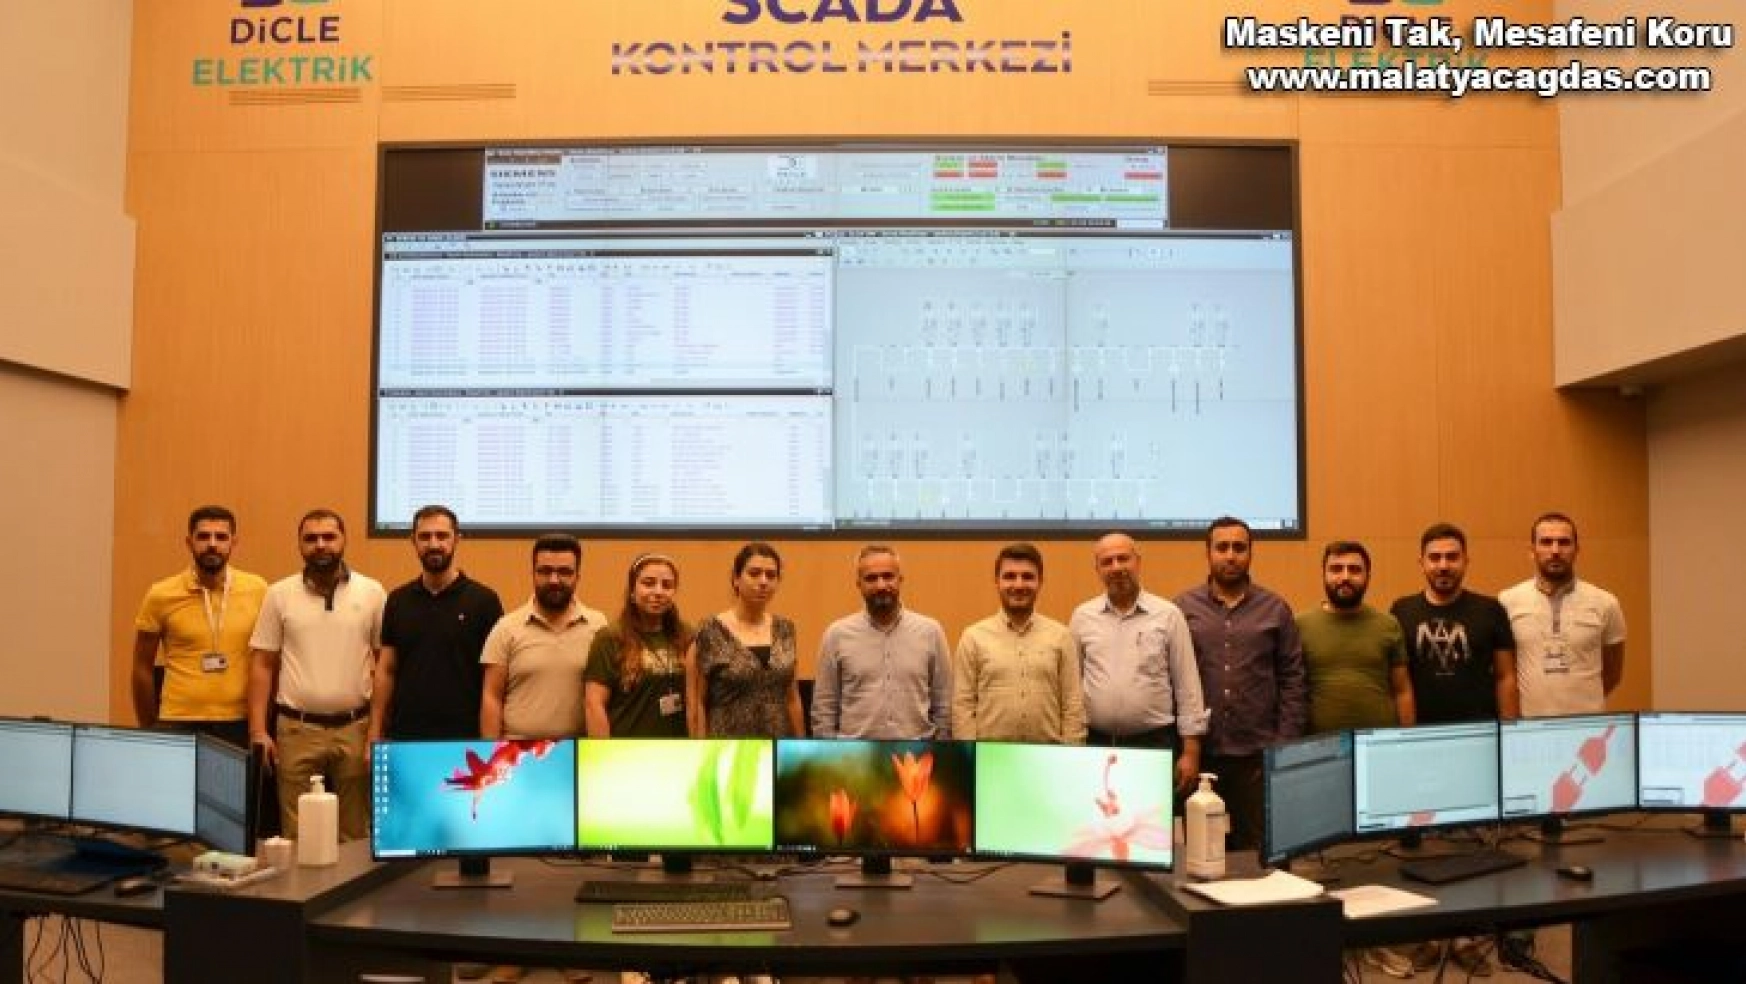 Dicle Elektrik, 59 milyon liralık yatırımla SCADA merkezi kurdu